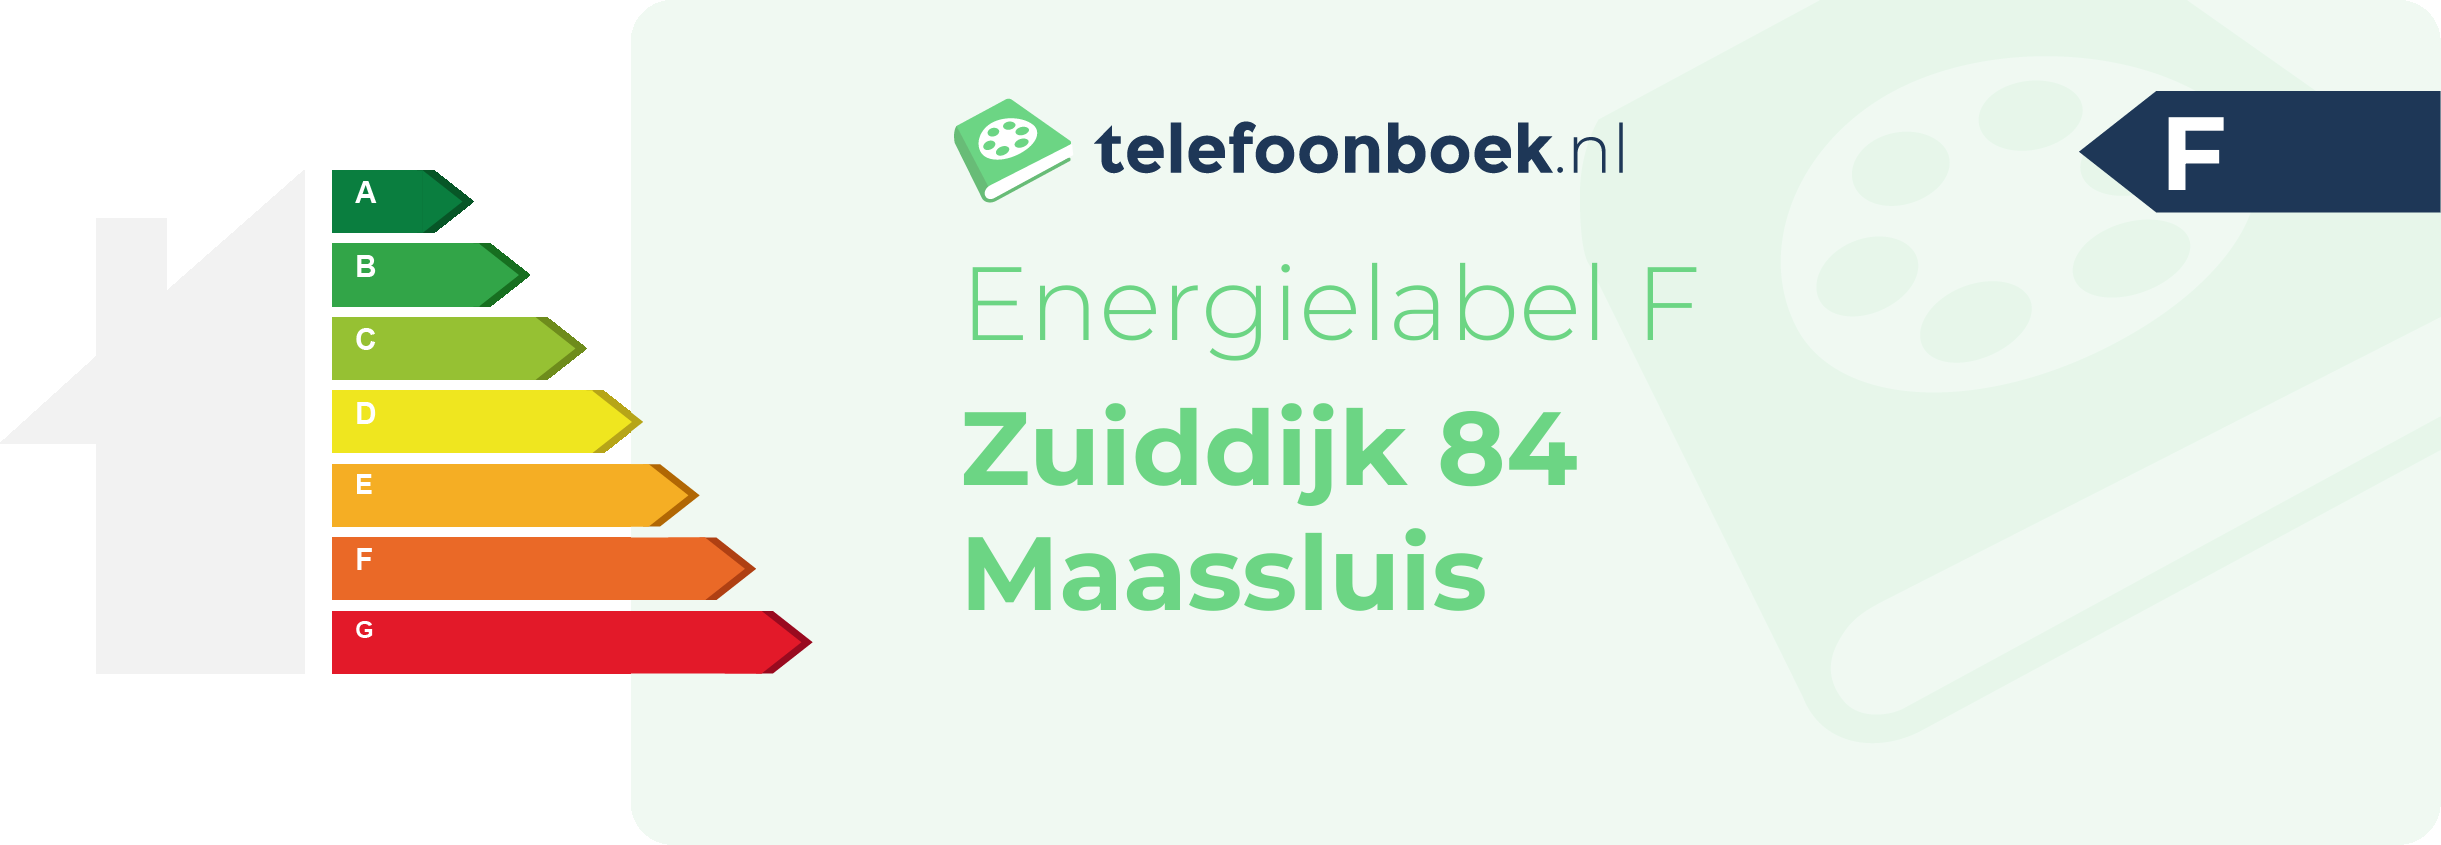 Energielabel Zuiddijk 84 Maassluis